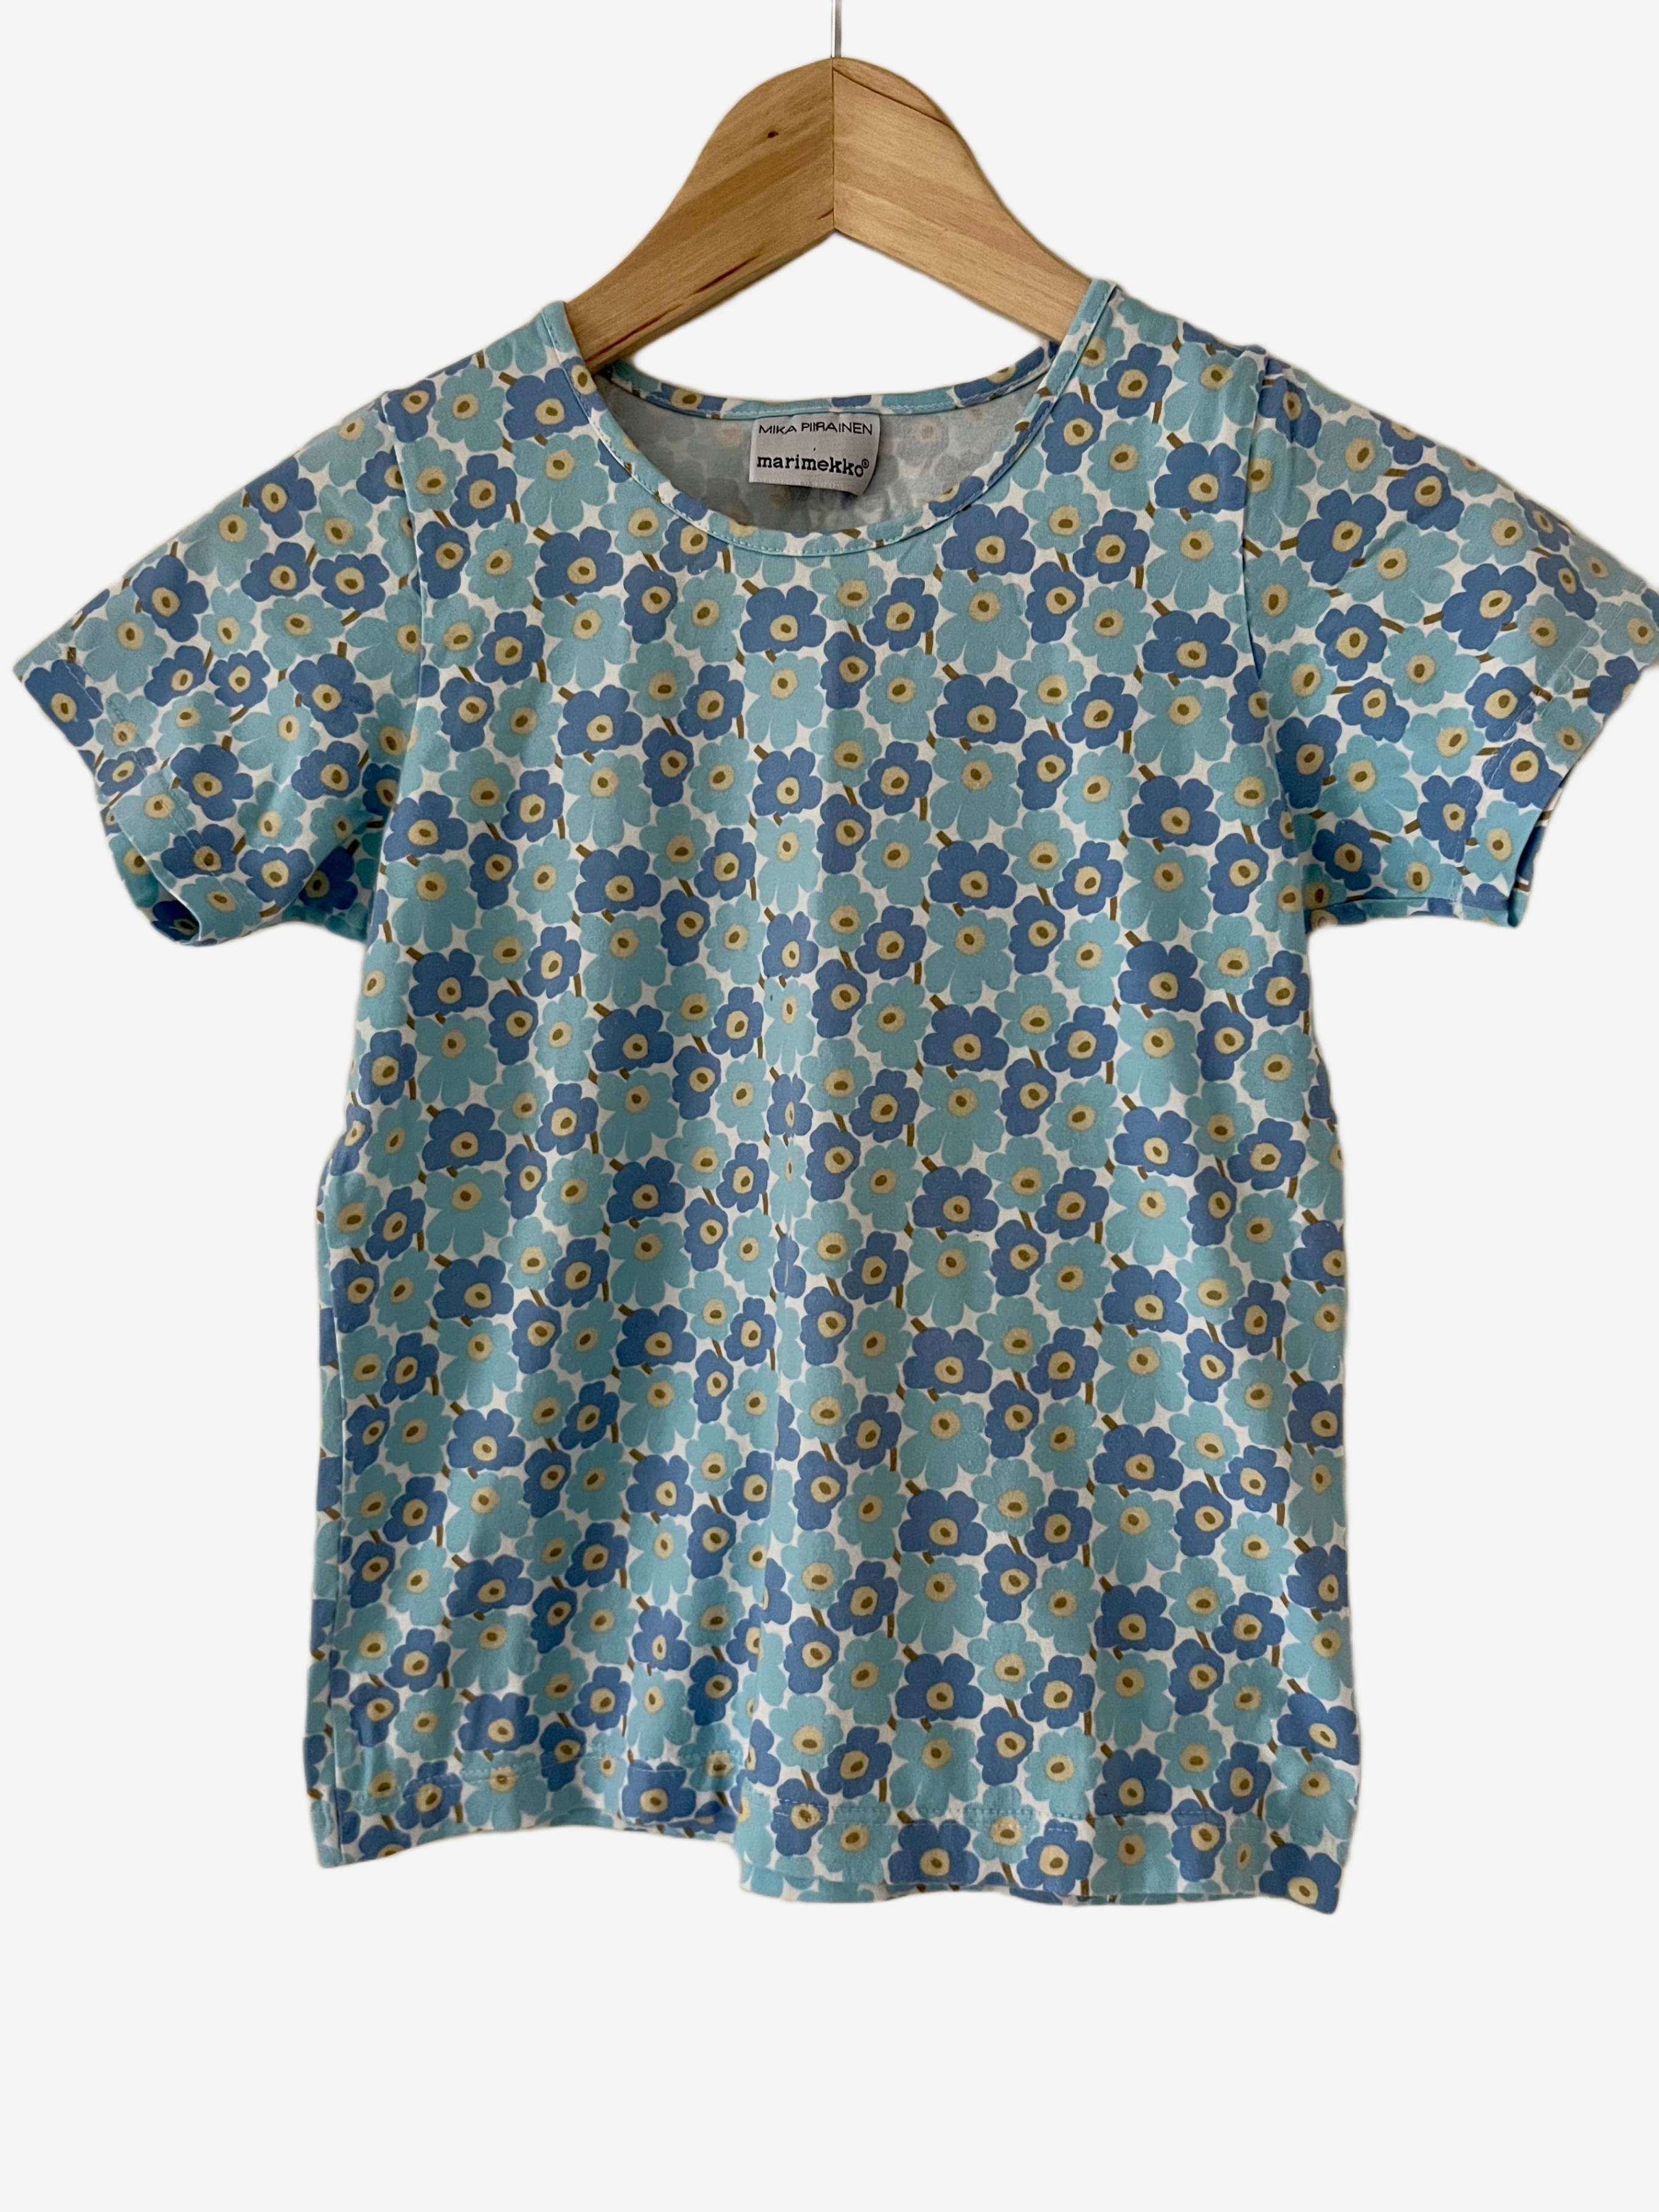 Marimekko Pre-loved - Lasten pikku-unikko t-paita, koko 130cm